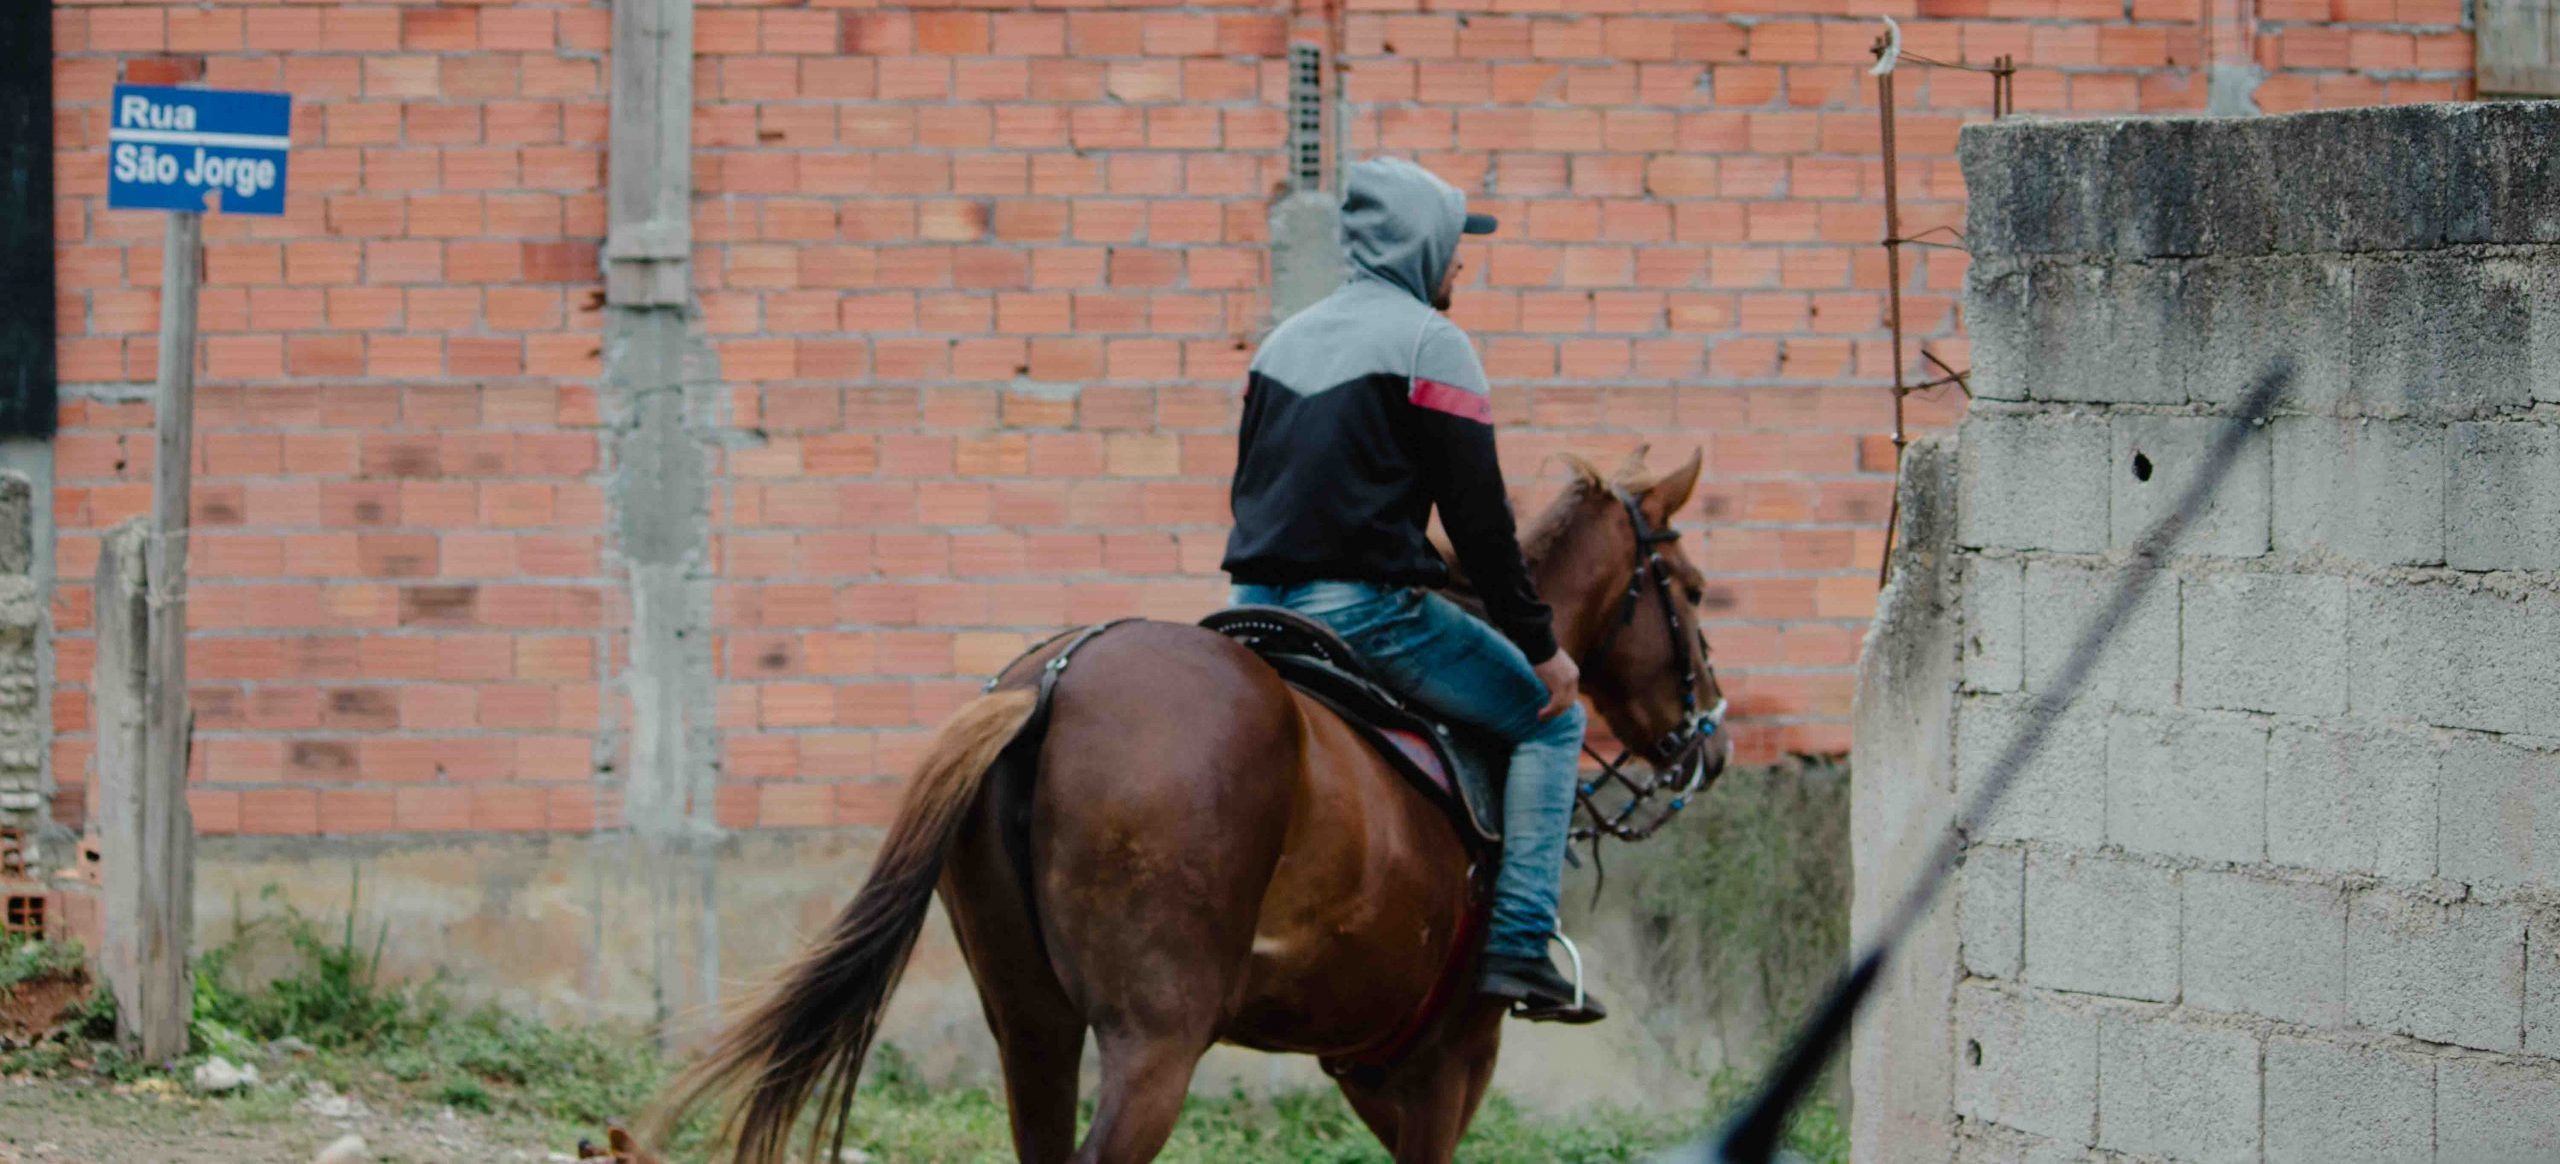 Pessoa montada em cavalo, Vila Marcelo, Parelheiros.